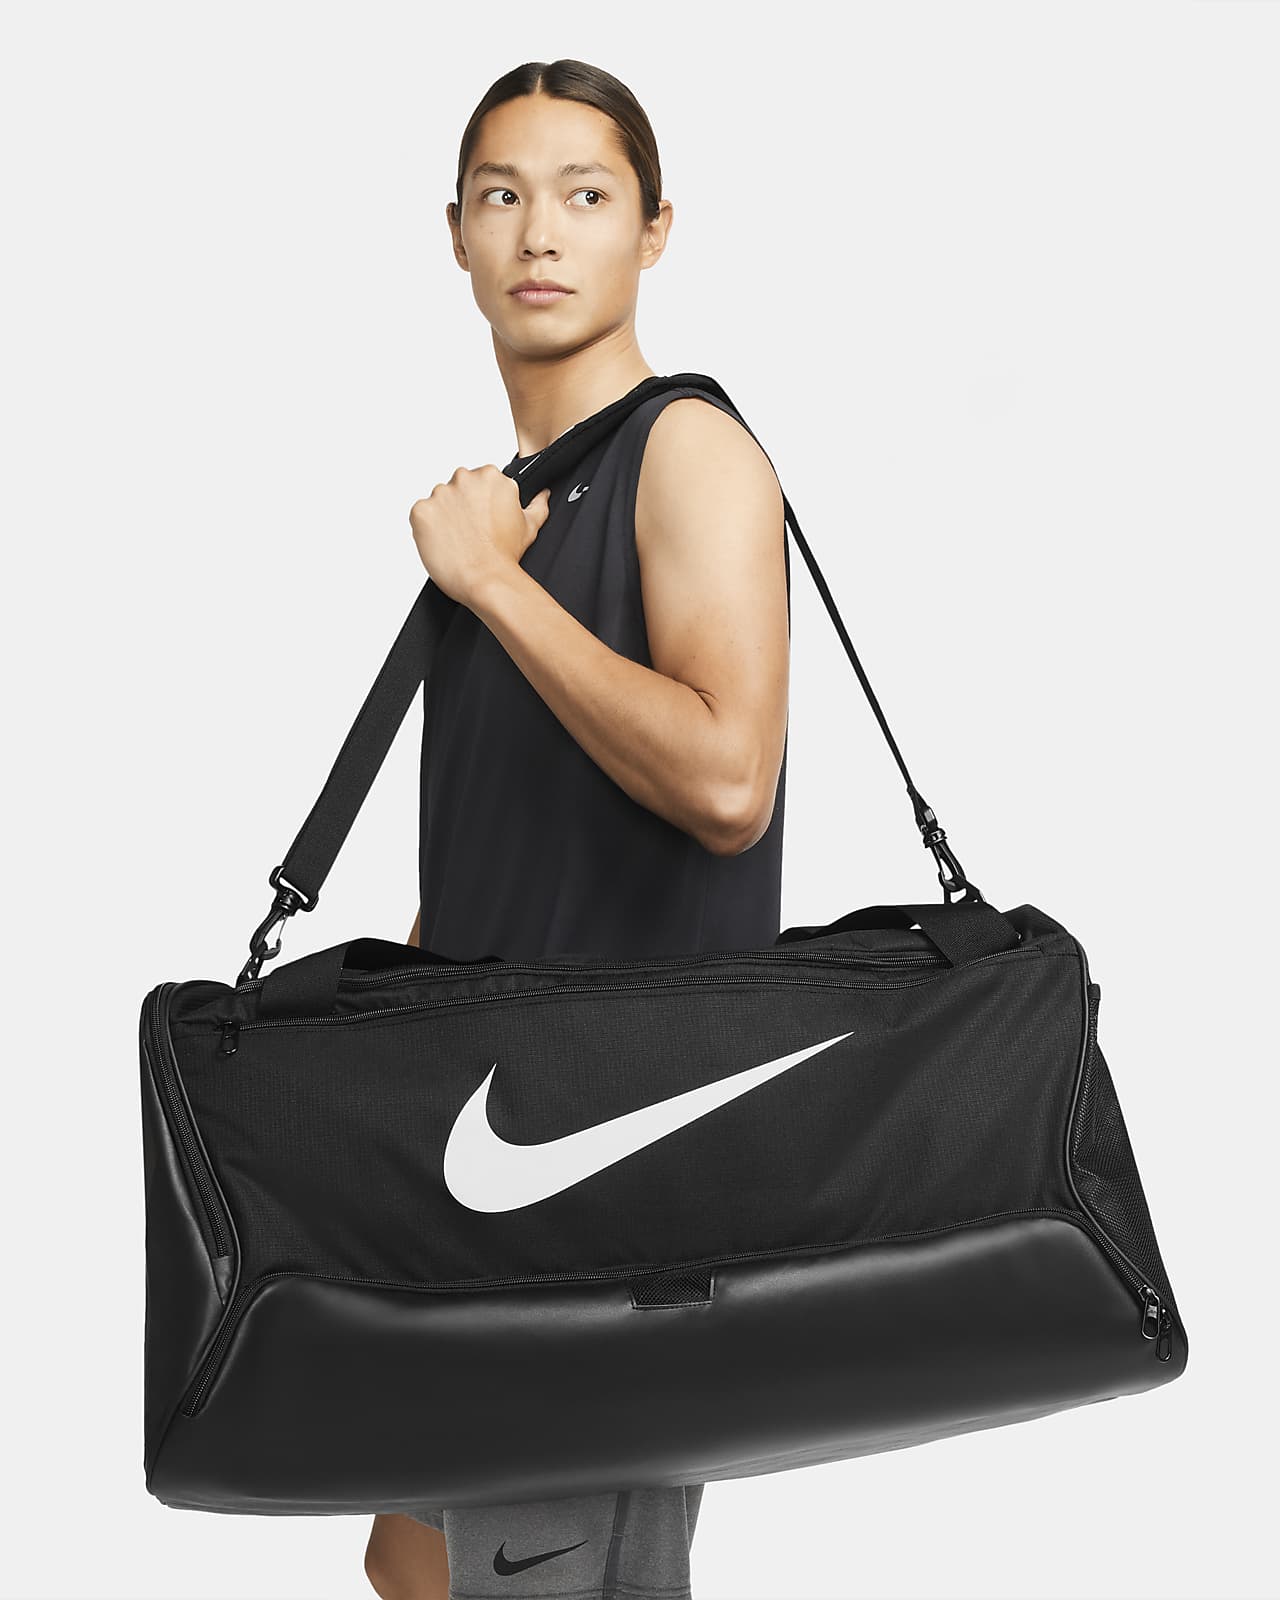 Τσάντα γυμναστηρίου για προπόνηση Nike Brasilia 9.5 (μέγεθος Large, 95 L)